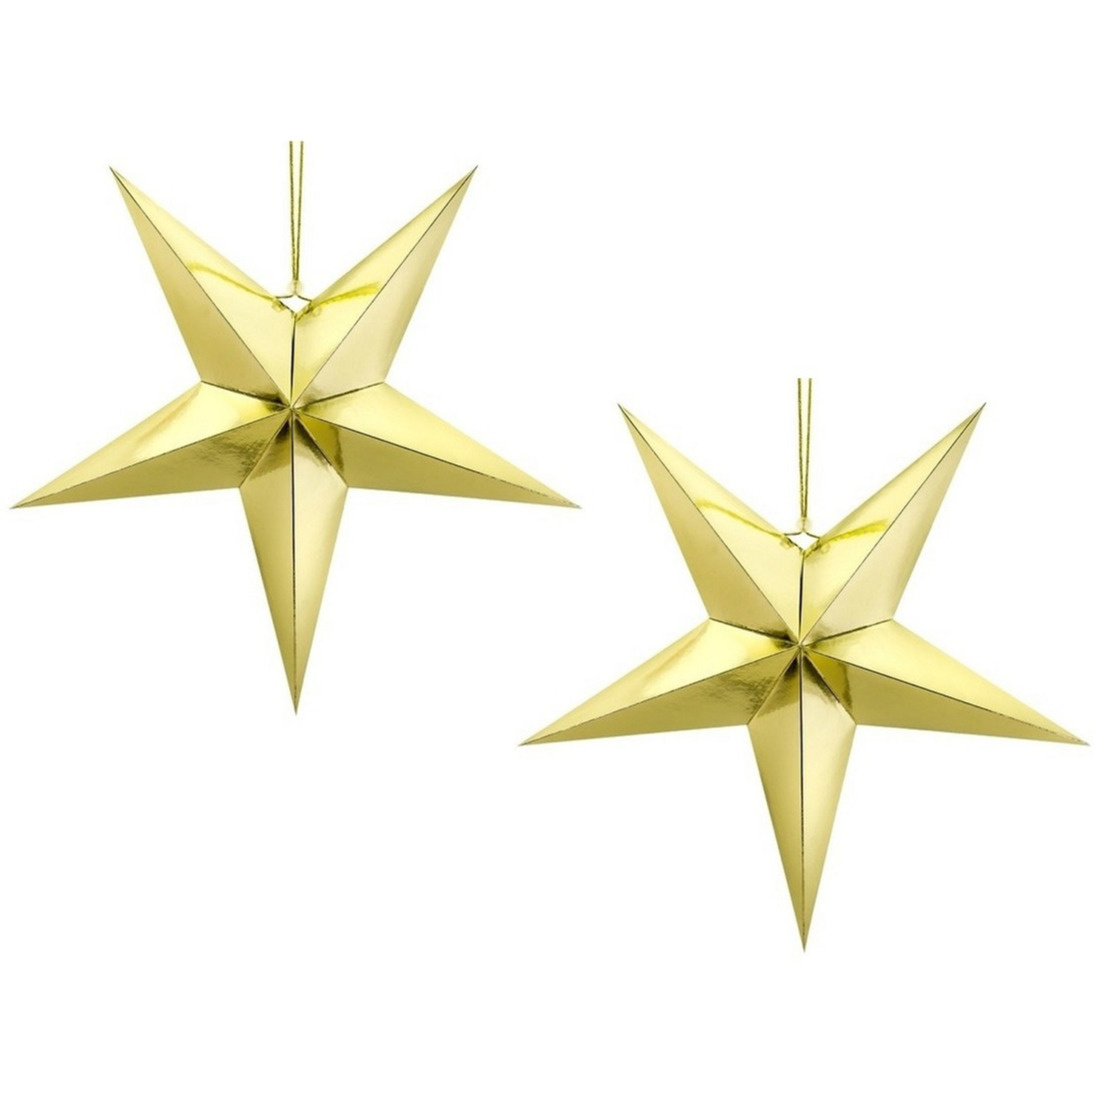 Pakket van 10x stuks kerstster decoratie gouden ster lampionnen 30 cm